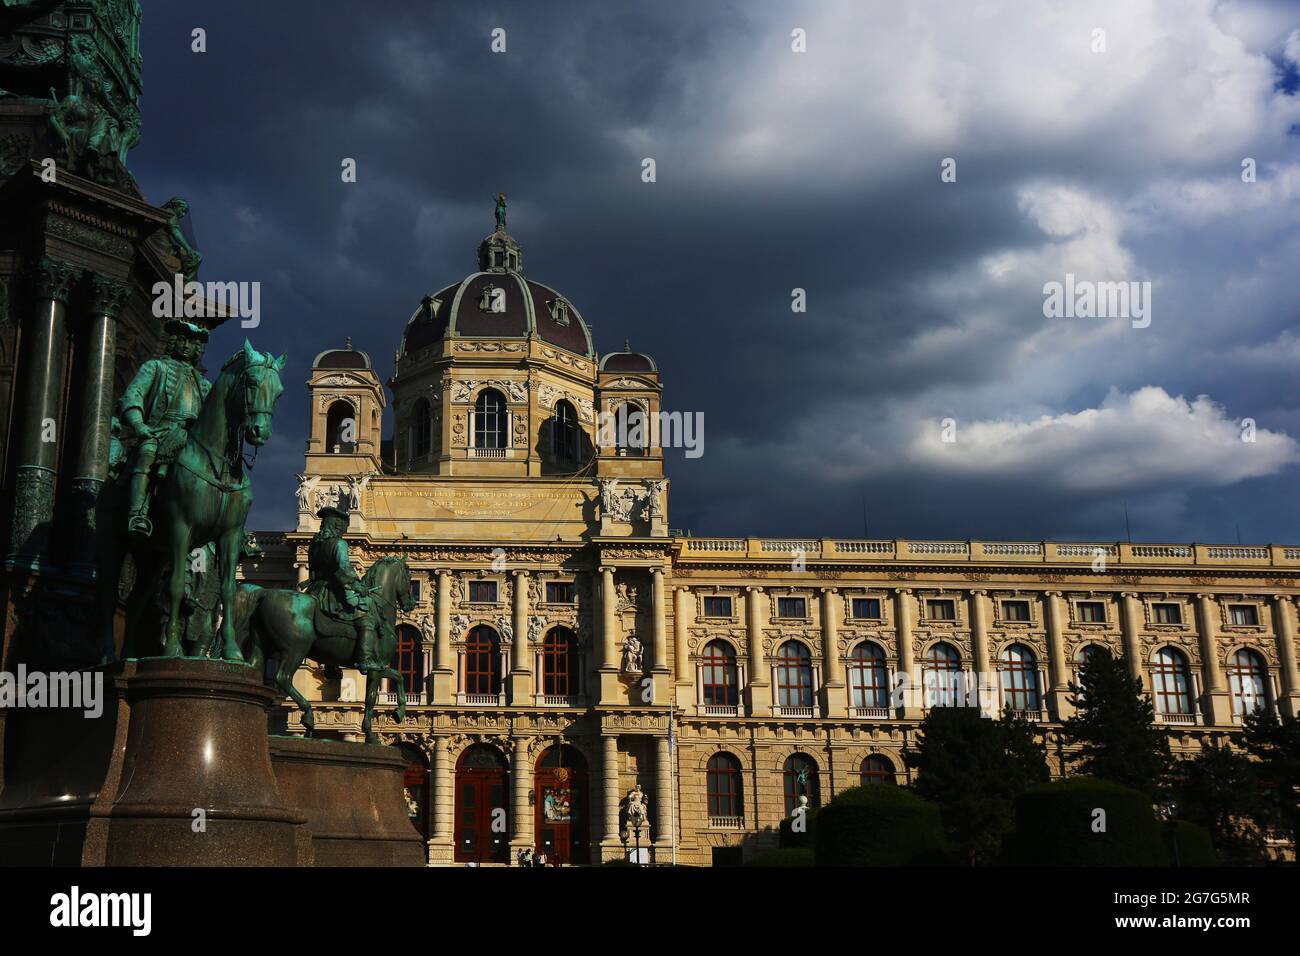 Wien, das Kunsthistorische Museum ist ein Kunstmuseum mit Gemälden in der Hauptstadt Wien. Es zählt zu den größten und beddeutendsten Museen der Welt.. Foto Stock